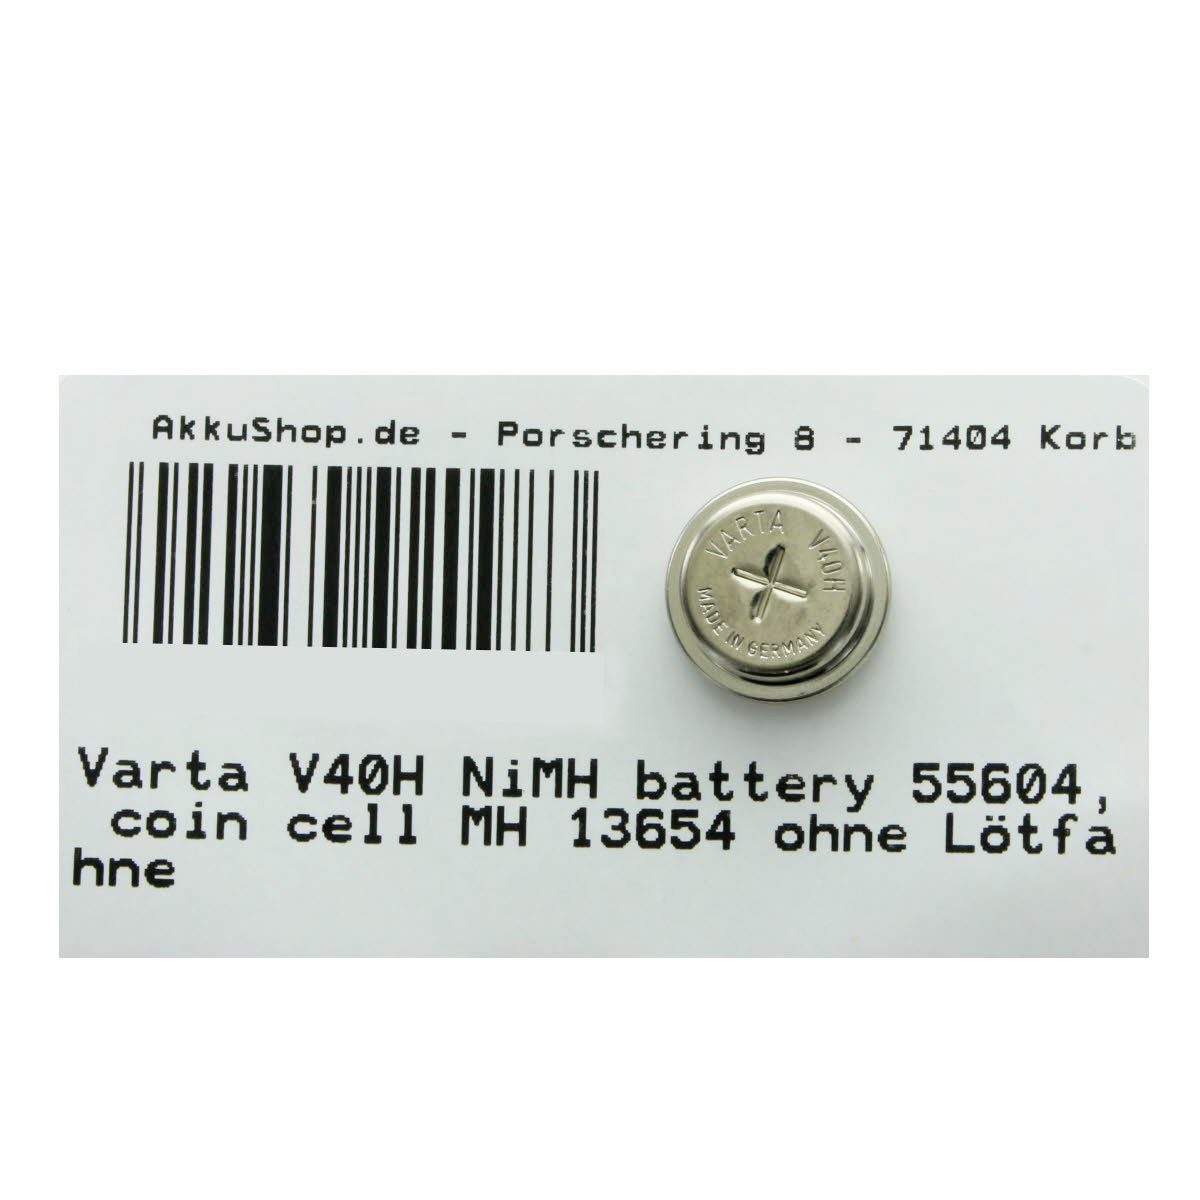 Knopfzelle, V) VARTA (1,2 13654, Varta 4 Stück 55604, MH cell coin NiMH V40H battery